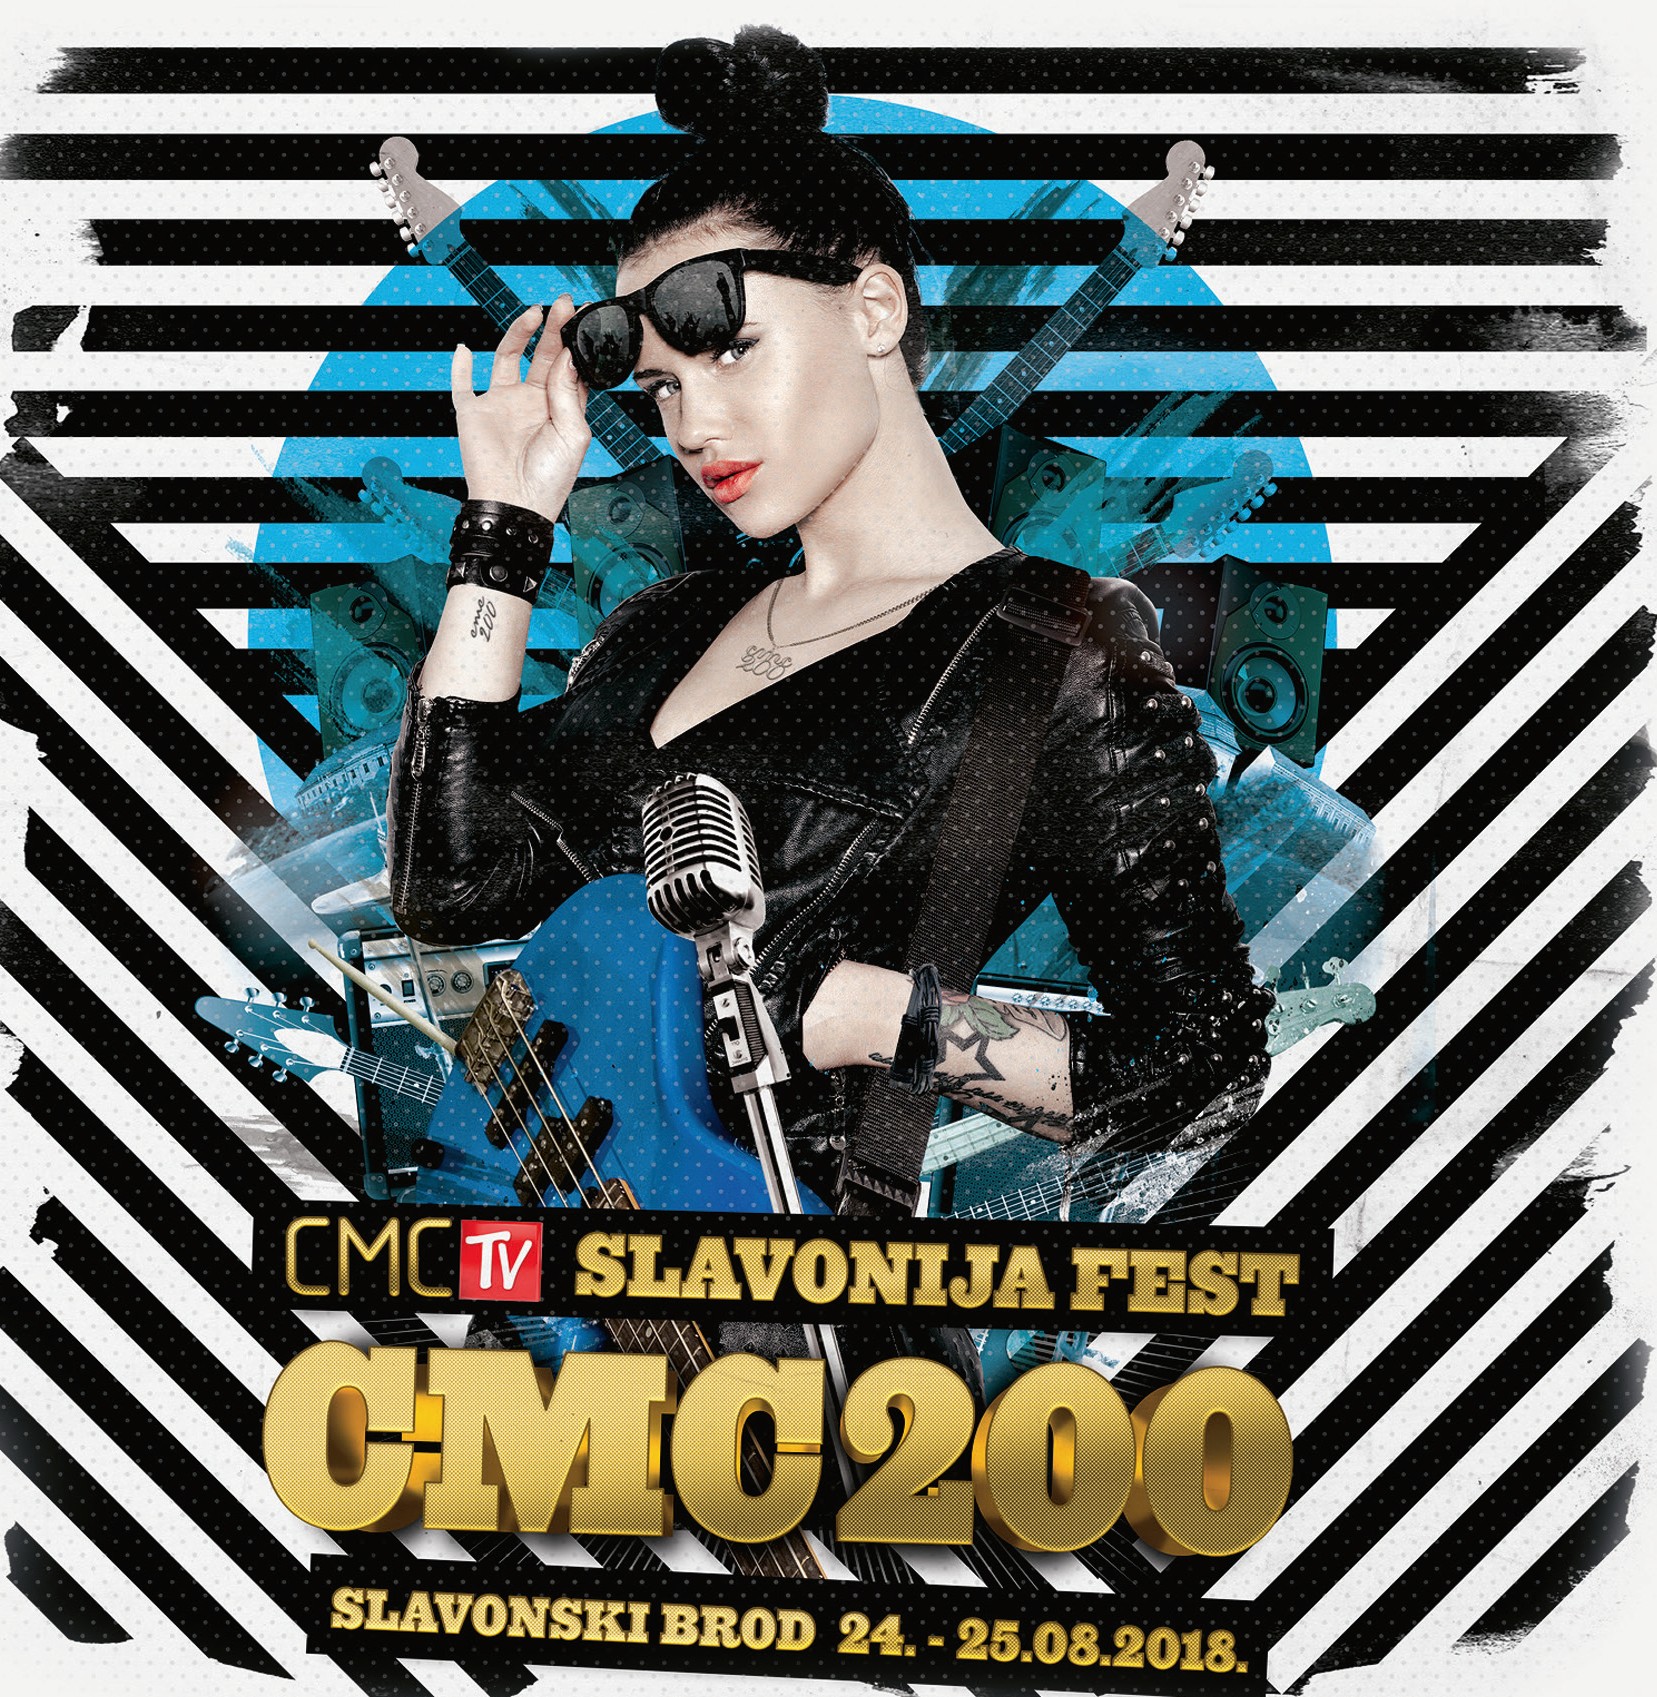 U prodaji festivalski album “Slavonija fest CMC 200 2018”